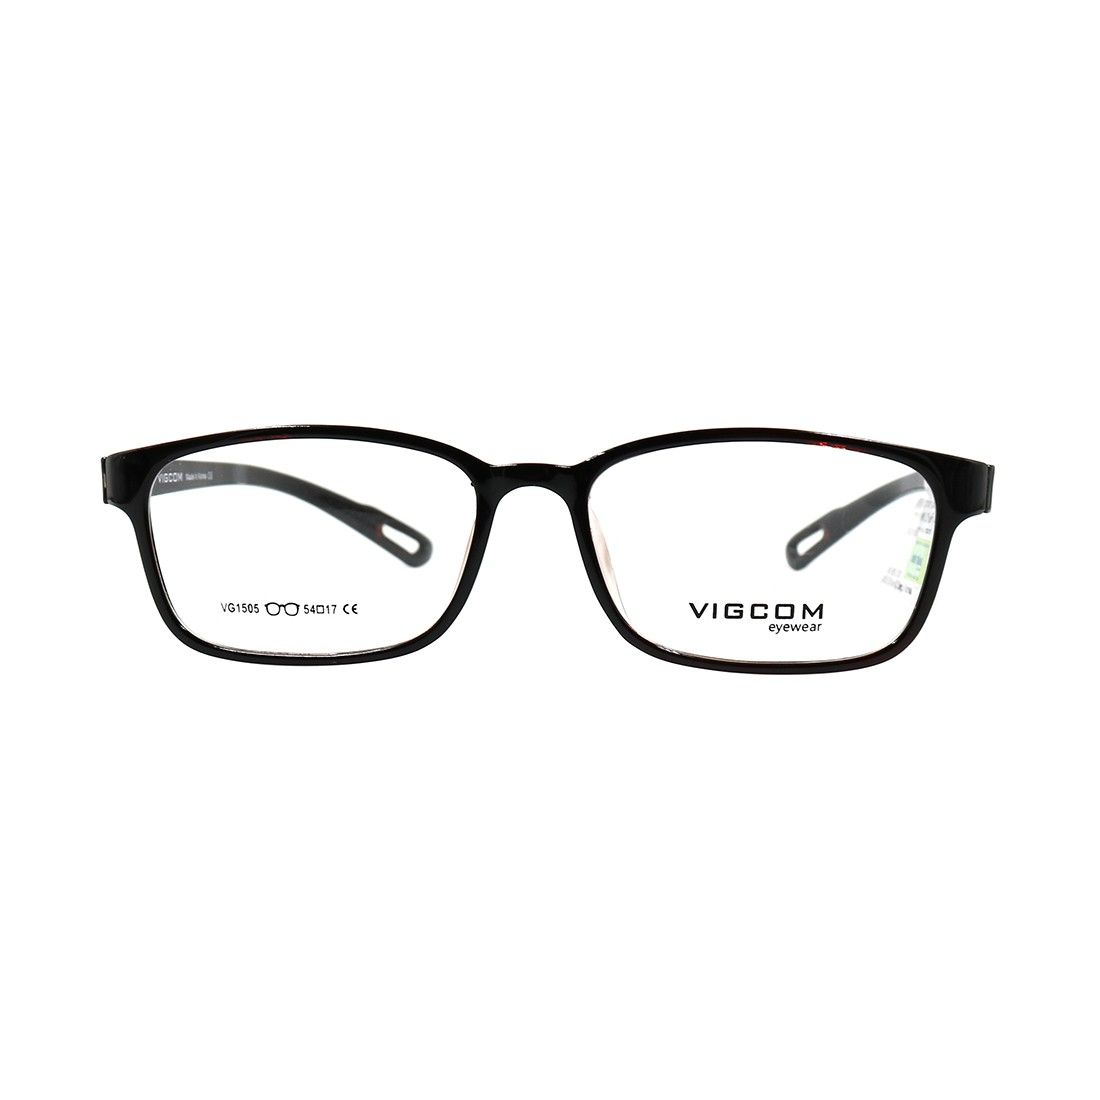  Gọng kính Vigcom VG1505 CN5 